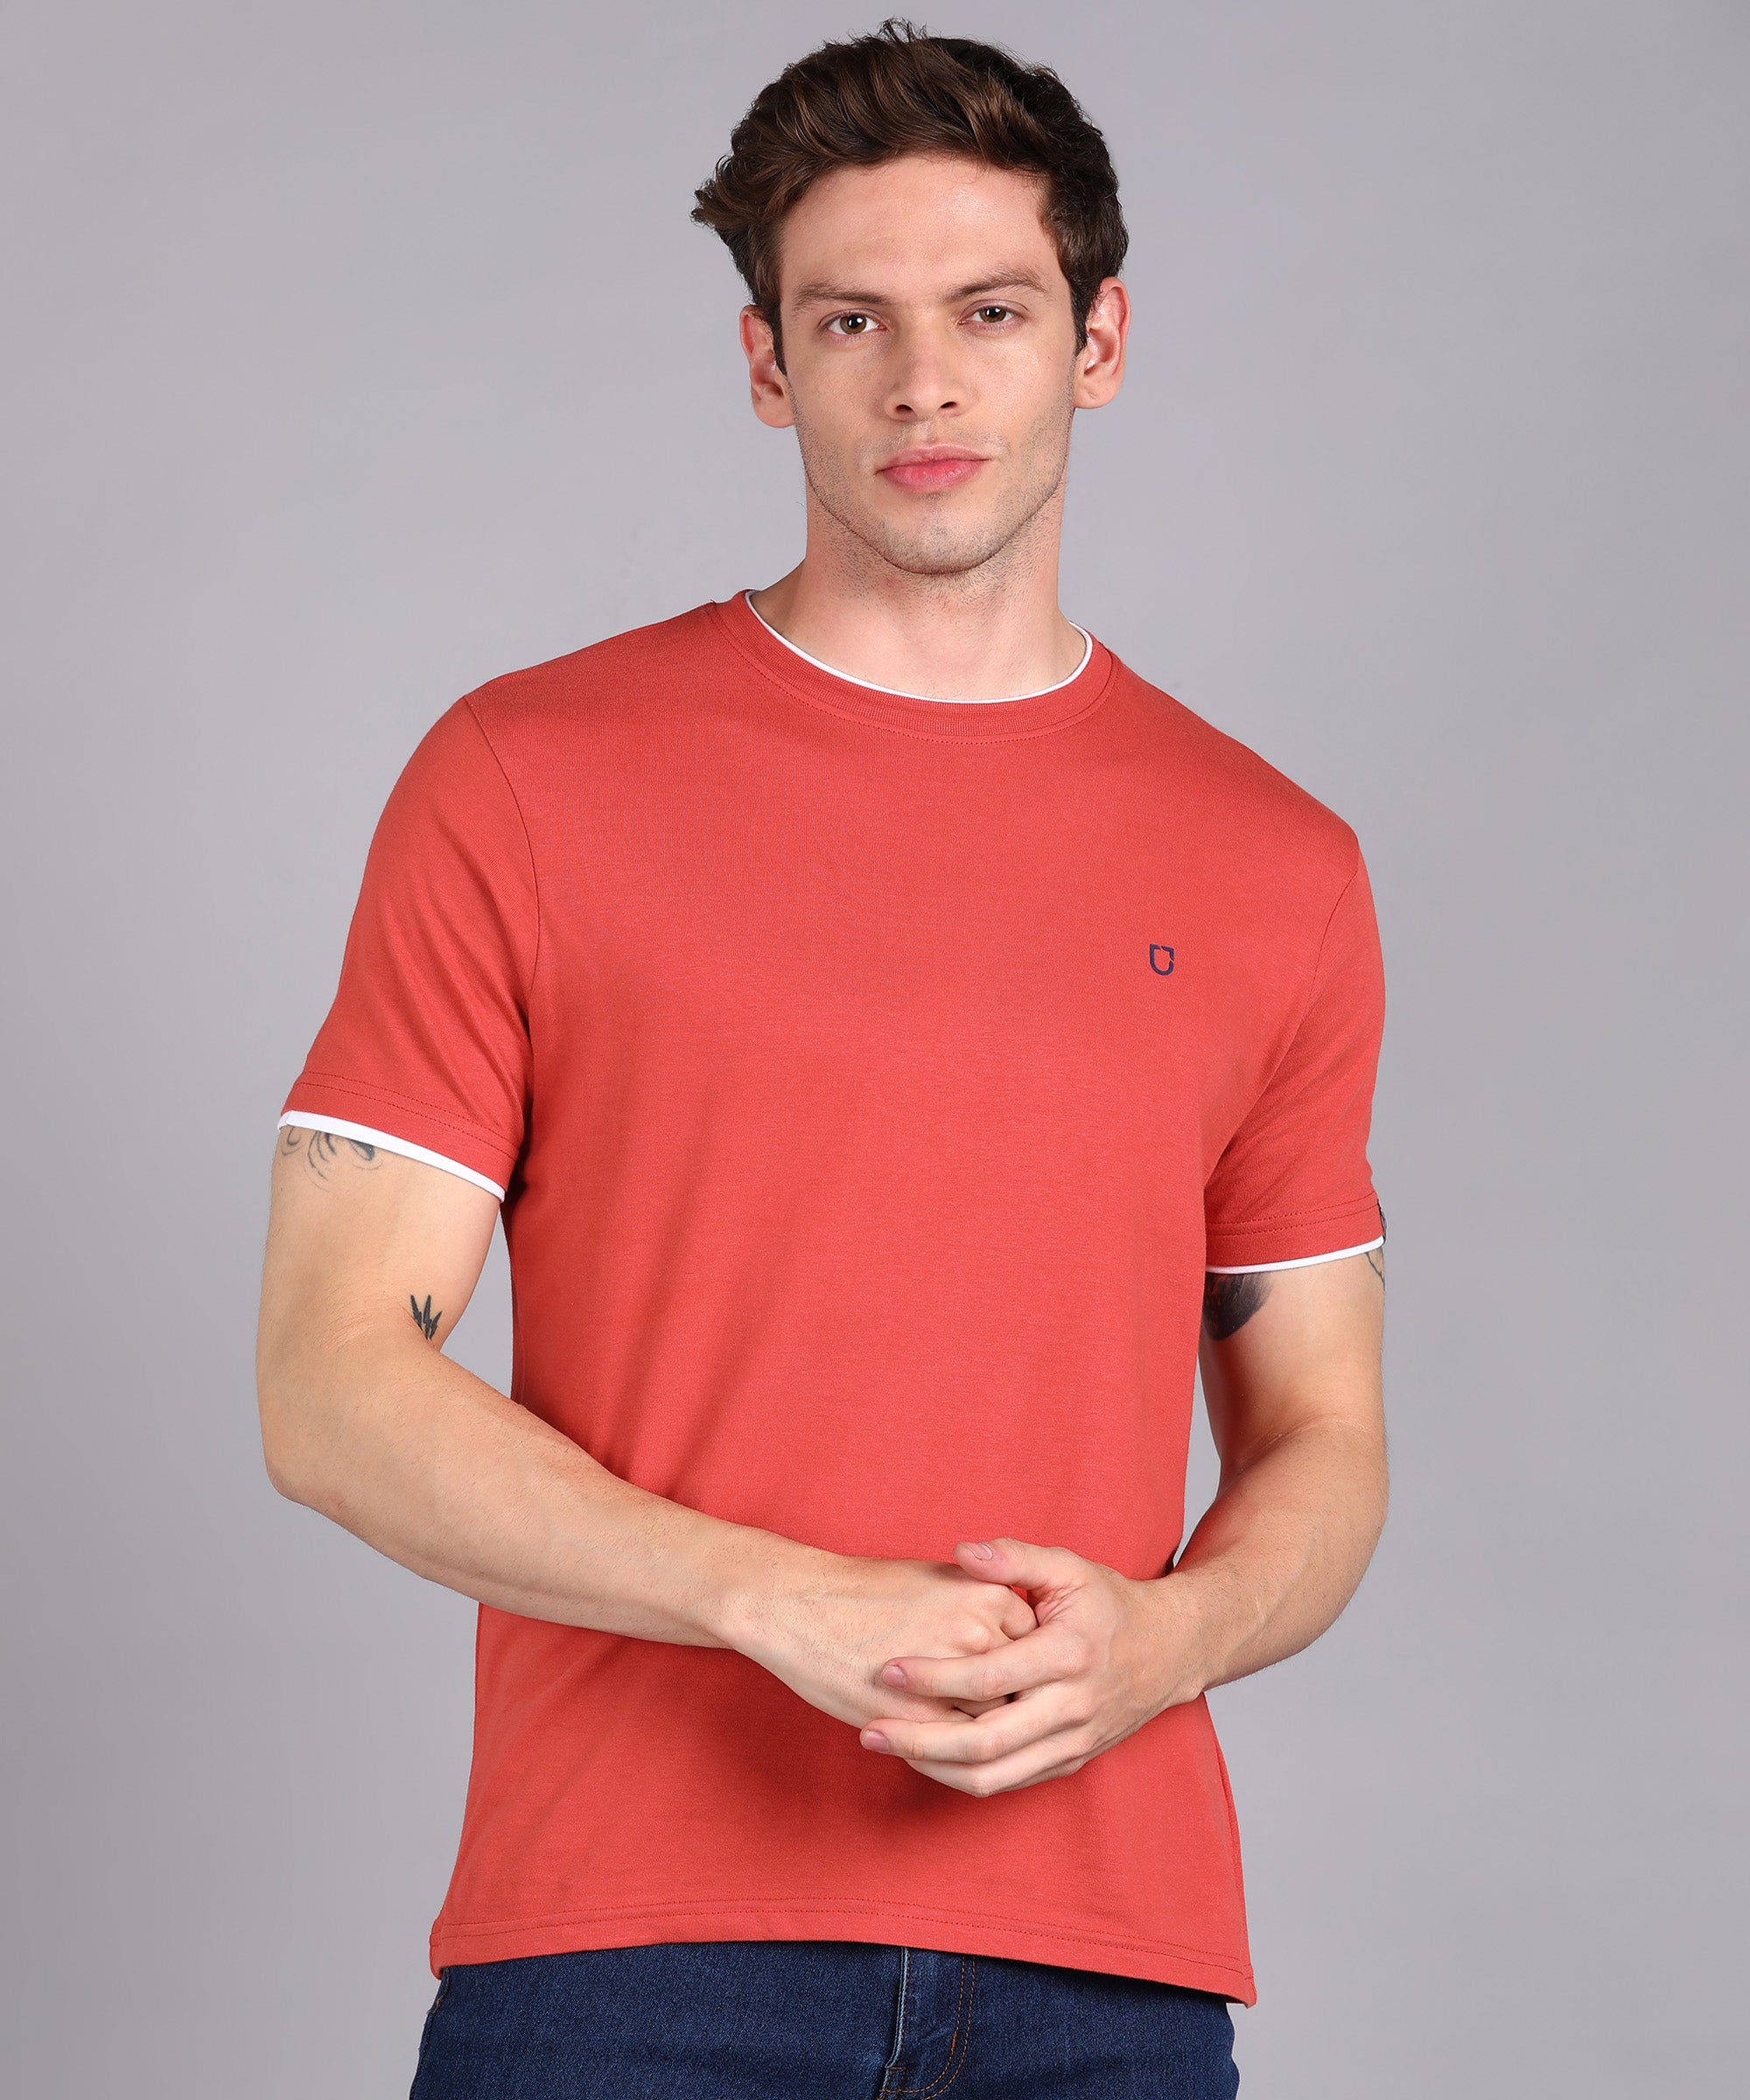 Men's Solid Orange Round Neck Half Sleeve Slim Fit Cotton T-Shirt